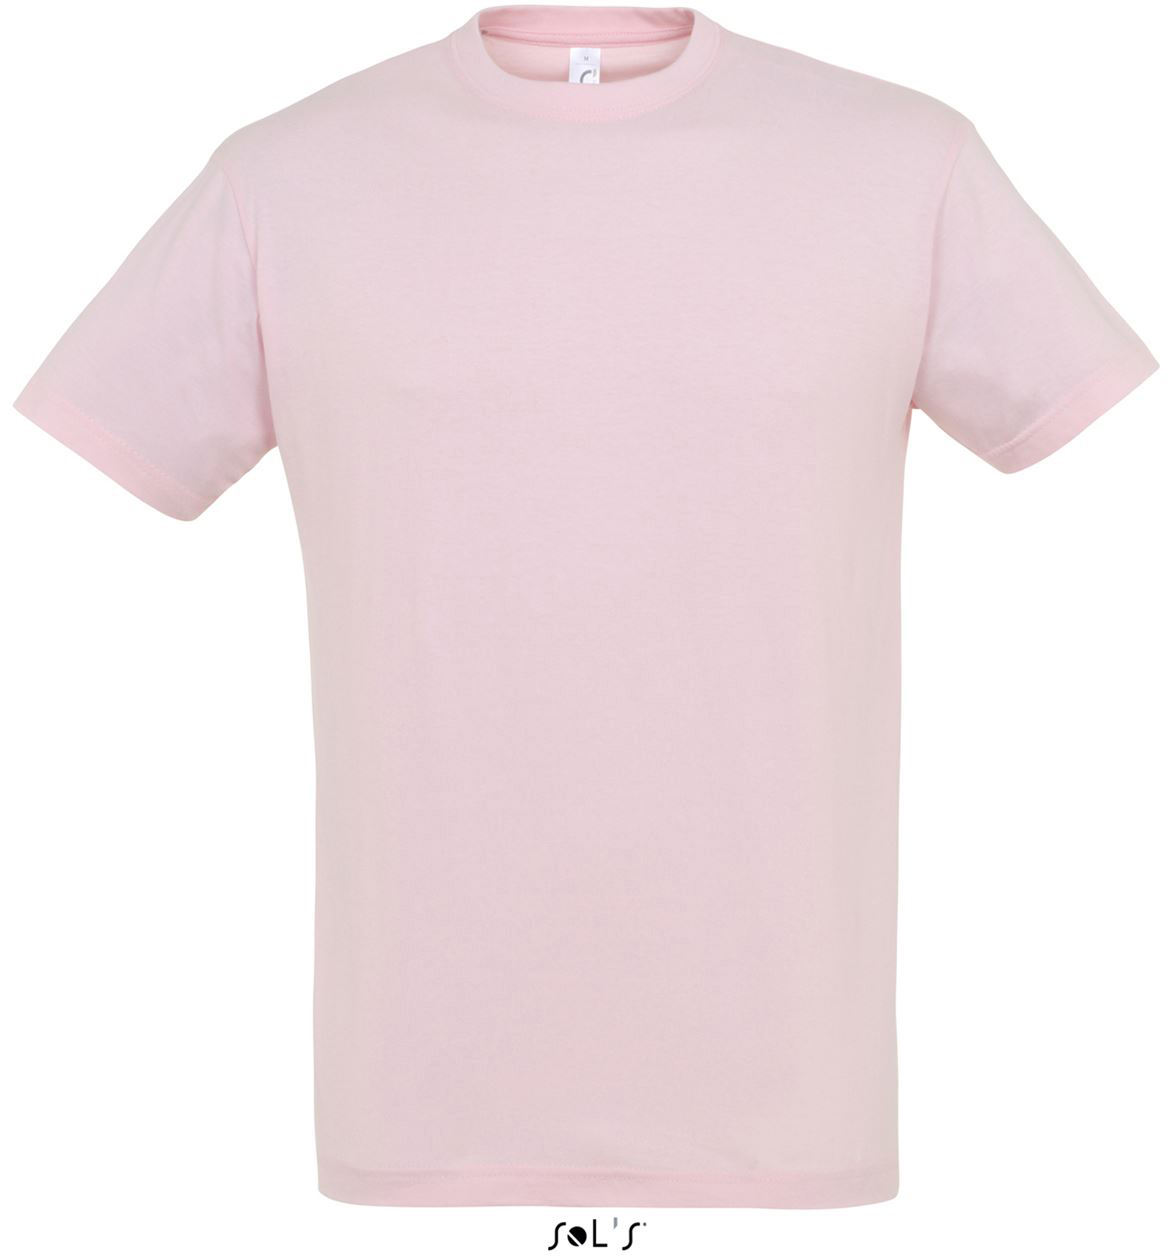 Sol's Regent - Unisex Round Collar T-shirt - Sol's Regent - Unisex Round Collar T-shirt - Light Pink